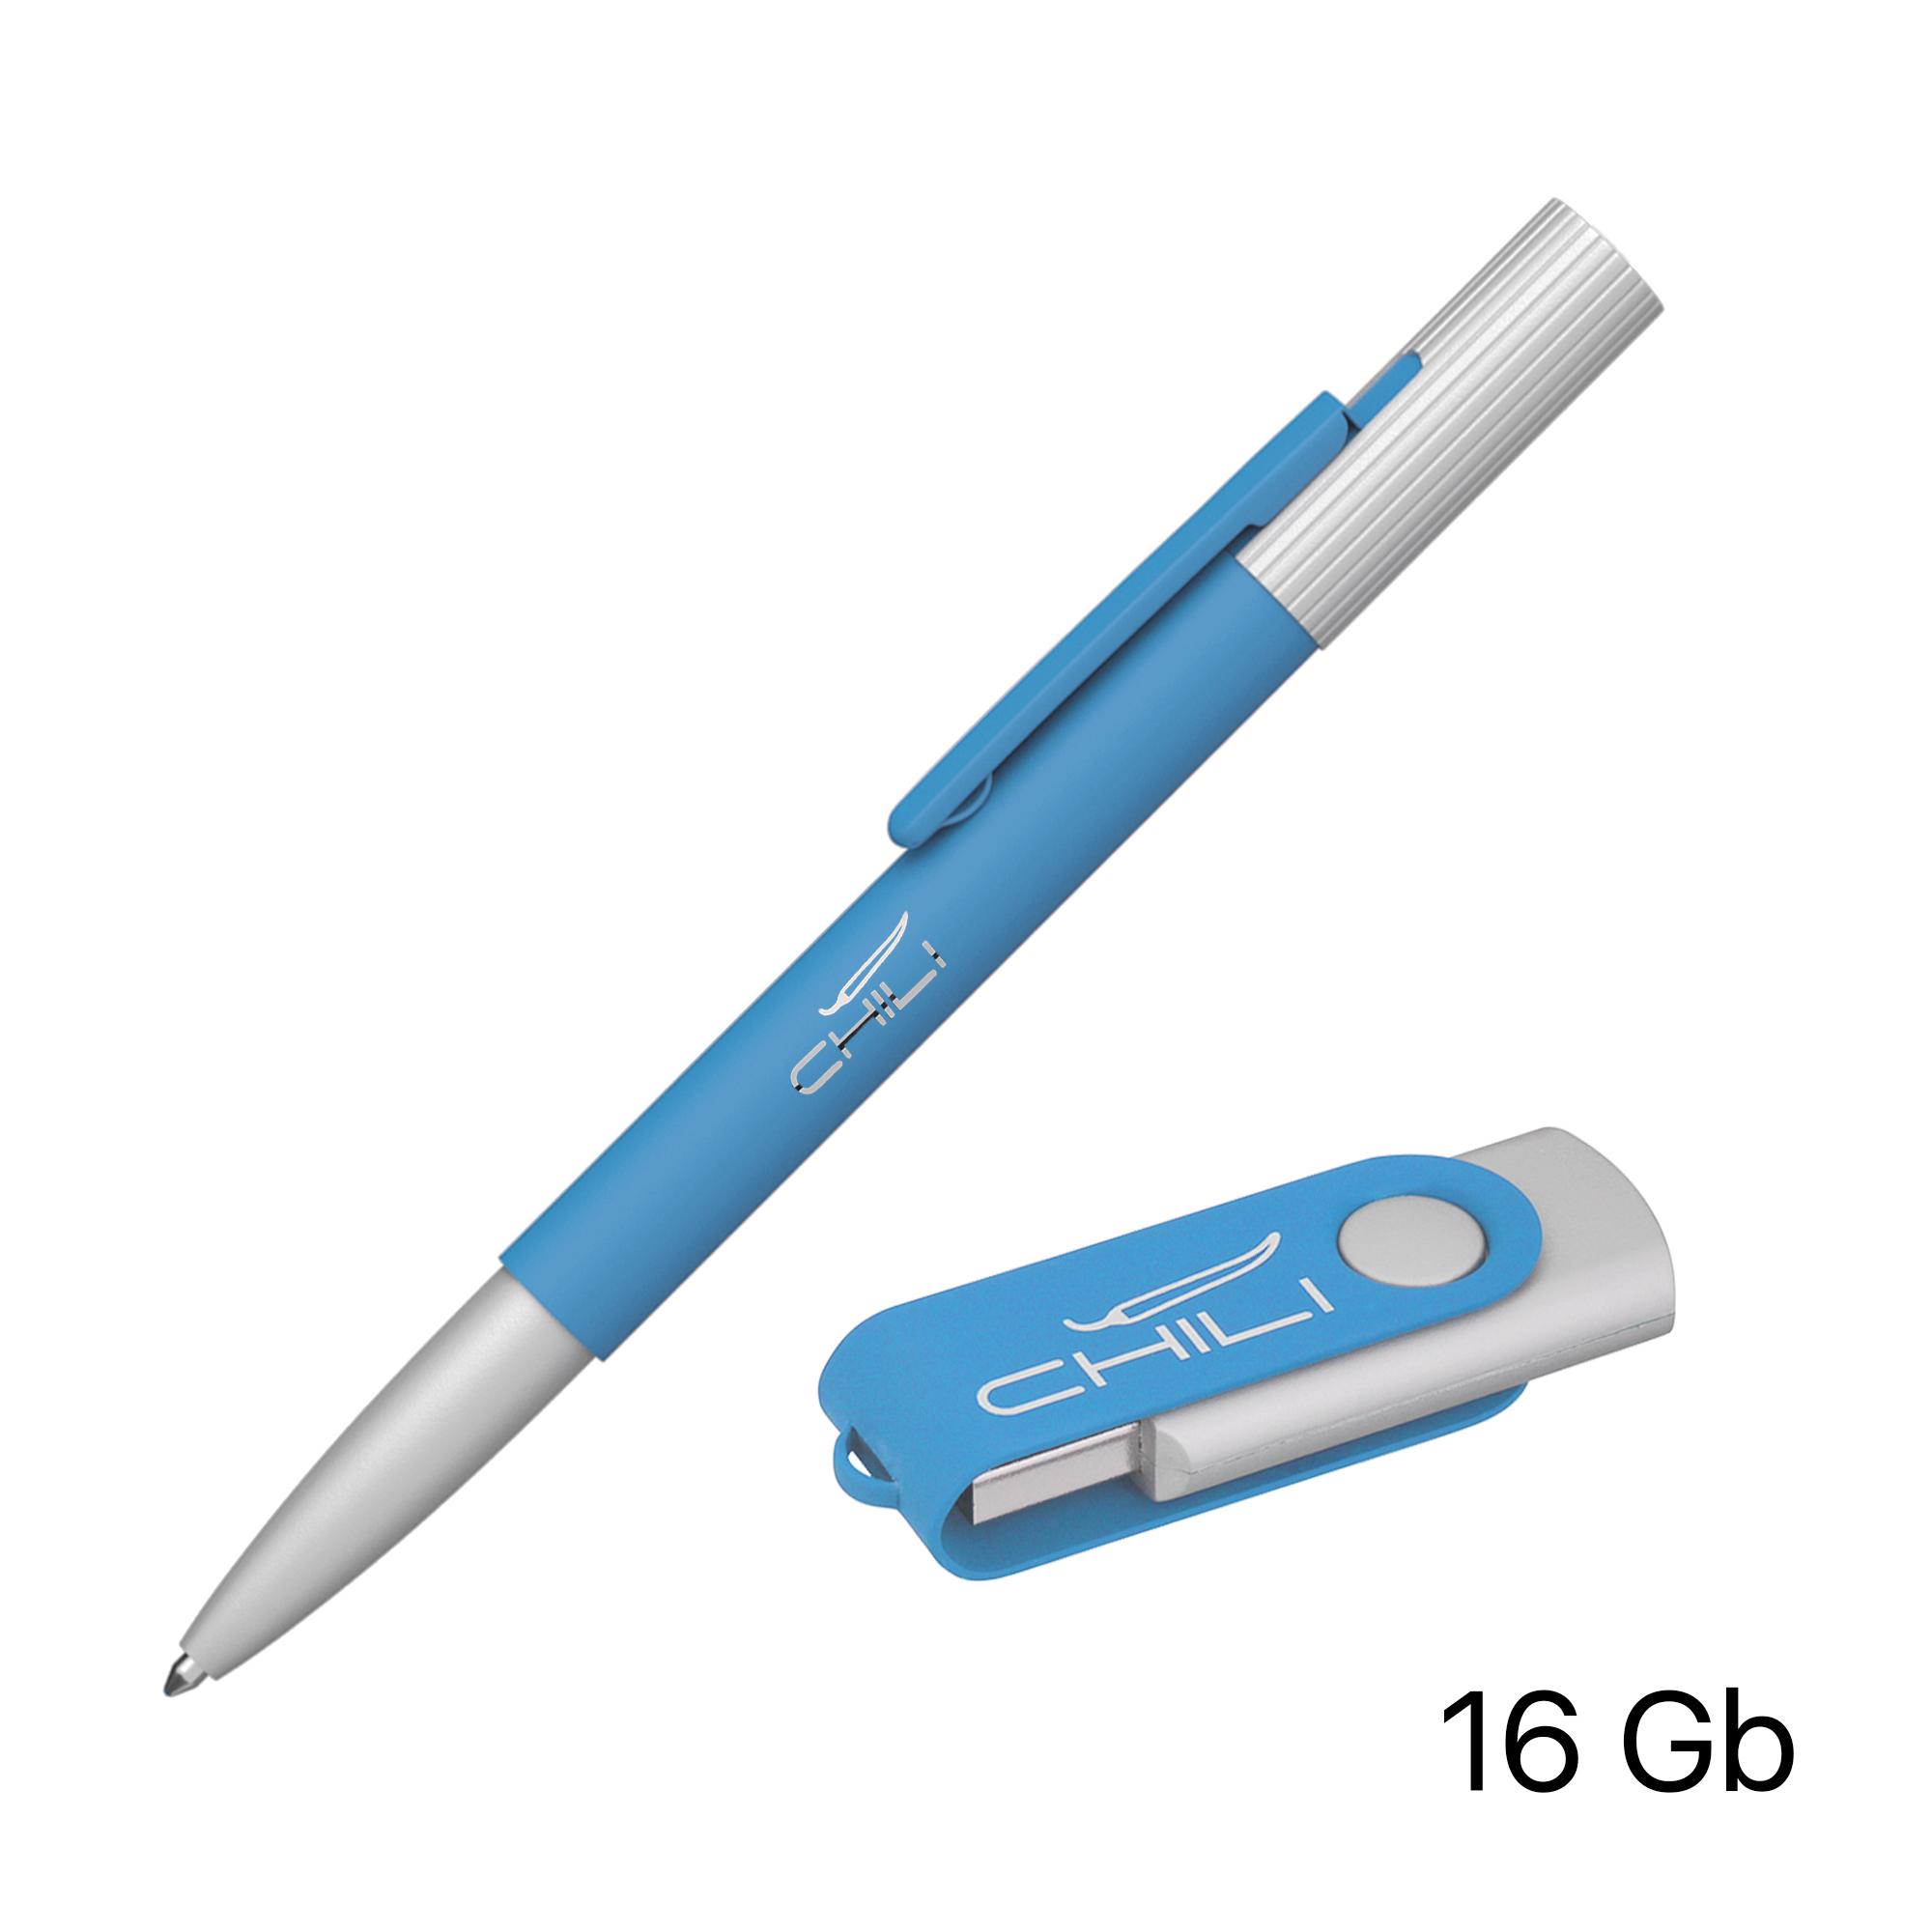 Набор ручка "Clas" + флеш-карта "Vostok" 16 Гб в футляре, покрытие soft touch, цвет голубой, фото 1